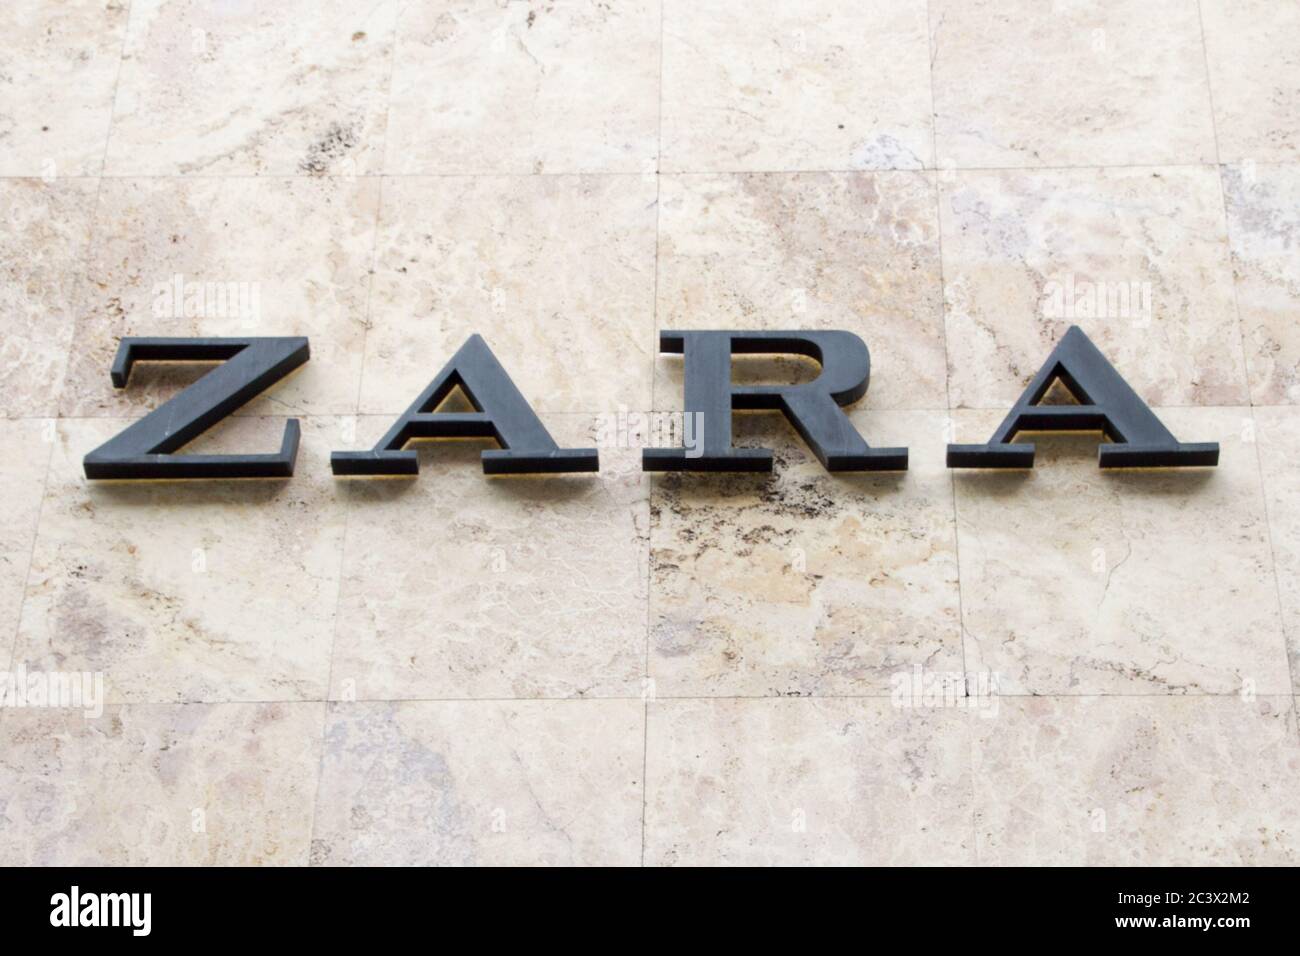 LOGO ZARA pour les magasins de vêtements espagnols. Zara est la principale  marque de vêtements de mode pour les enfants et les adultes de la société  espagnole Inditex, qui possède également Photo